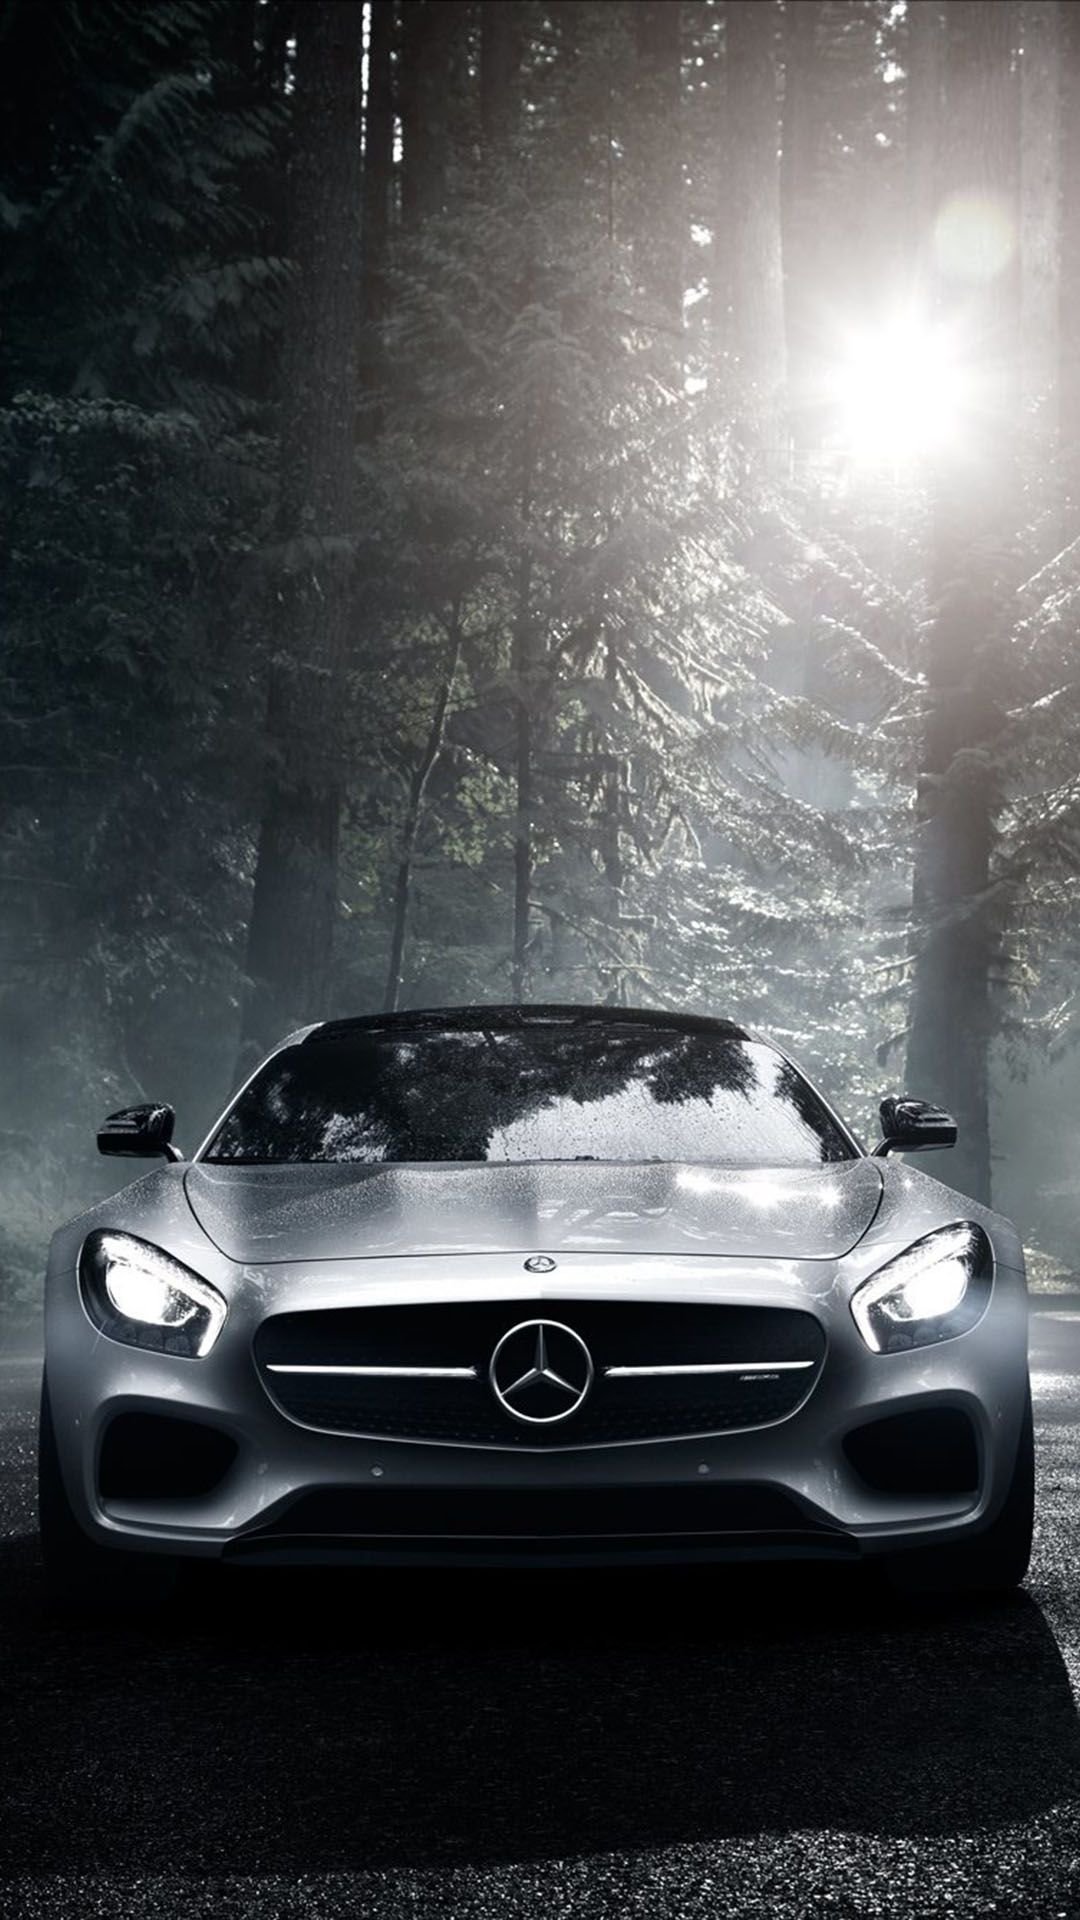 White Mercedes Benz Cars · Free Stock Photo